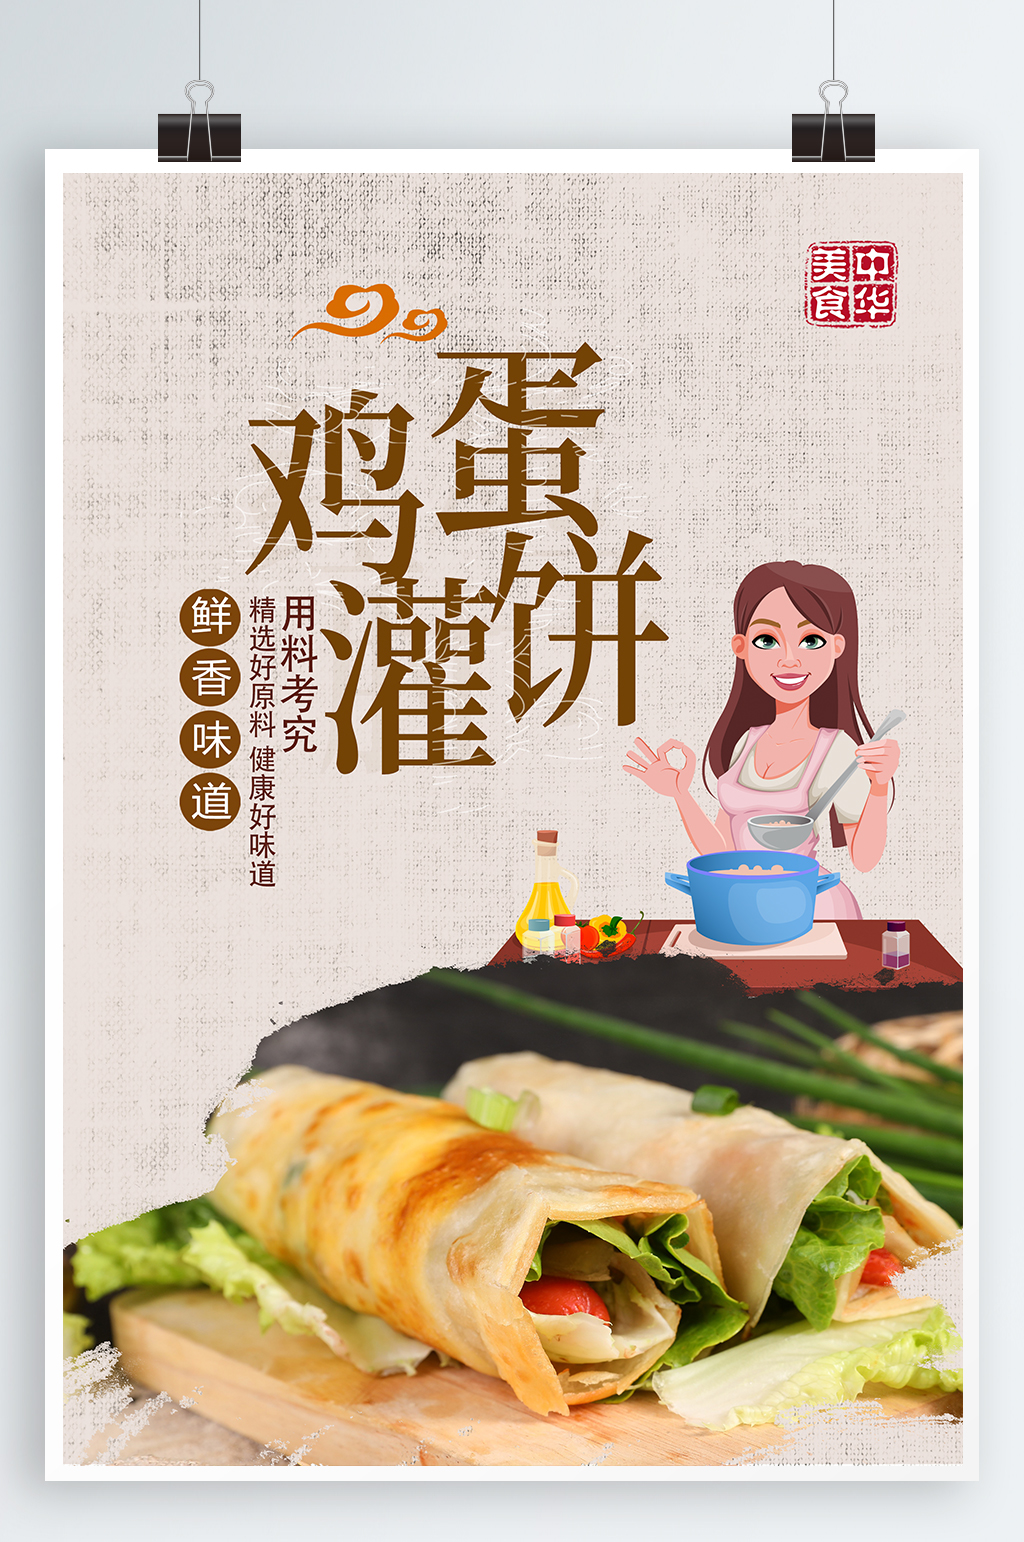 鸡蛋灌饼美食海报素材免费下载,本作品是由紫妍上传的原创平面广告